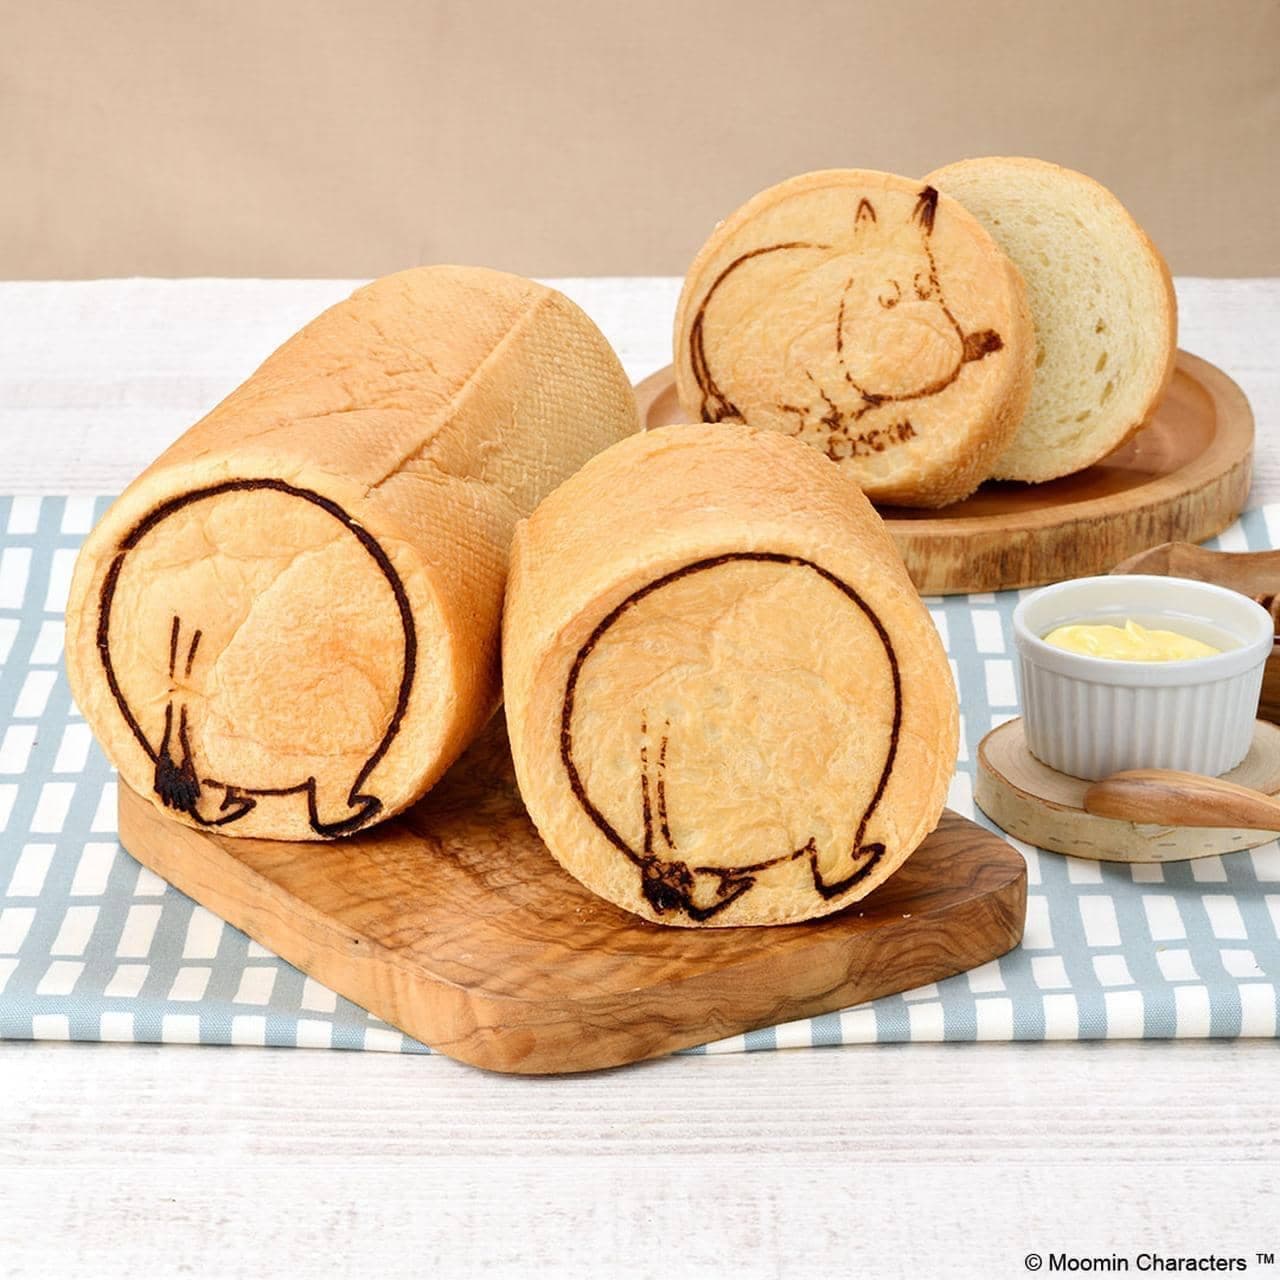 Moomin round buttocks bread